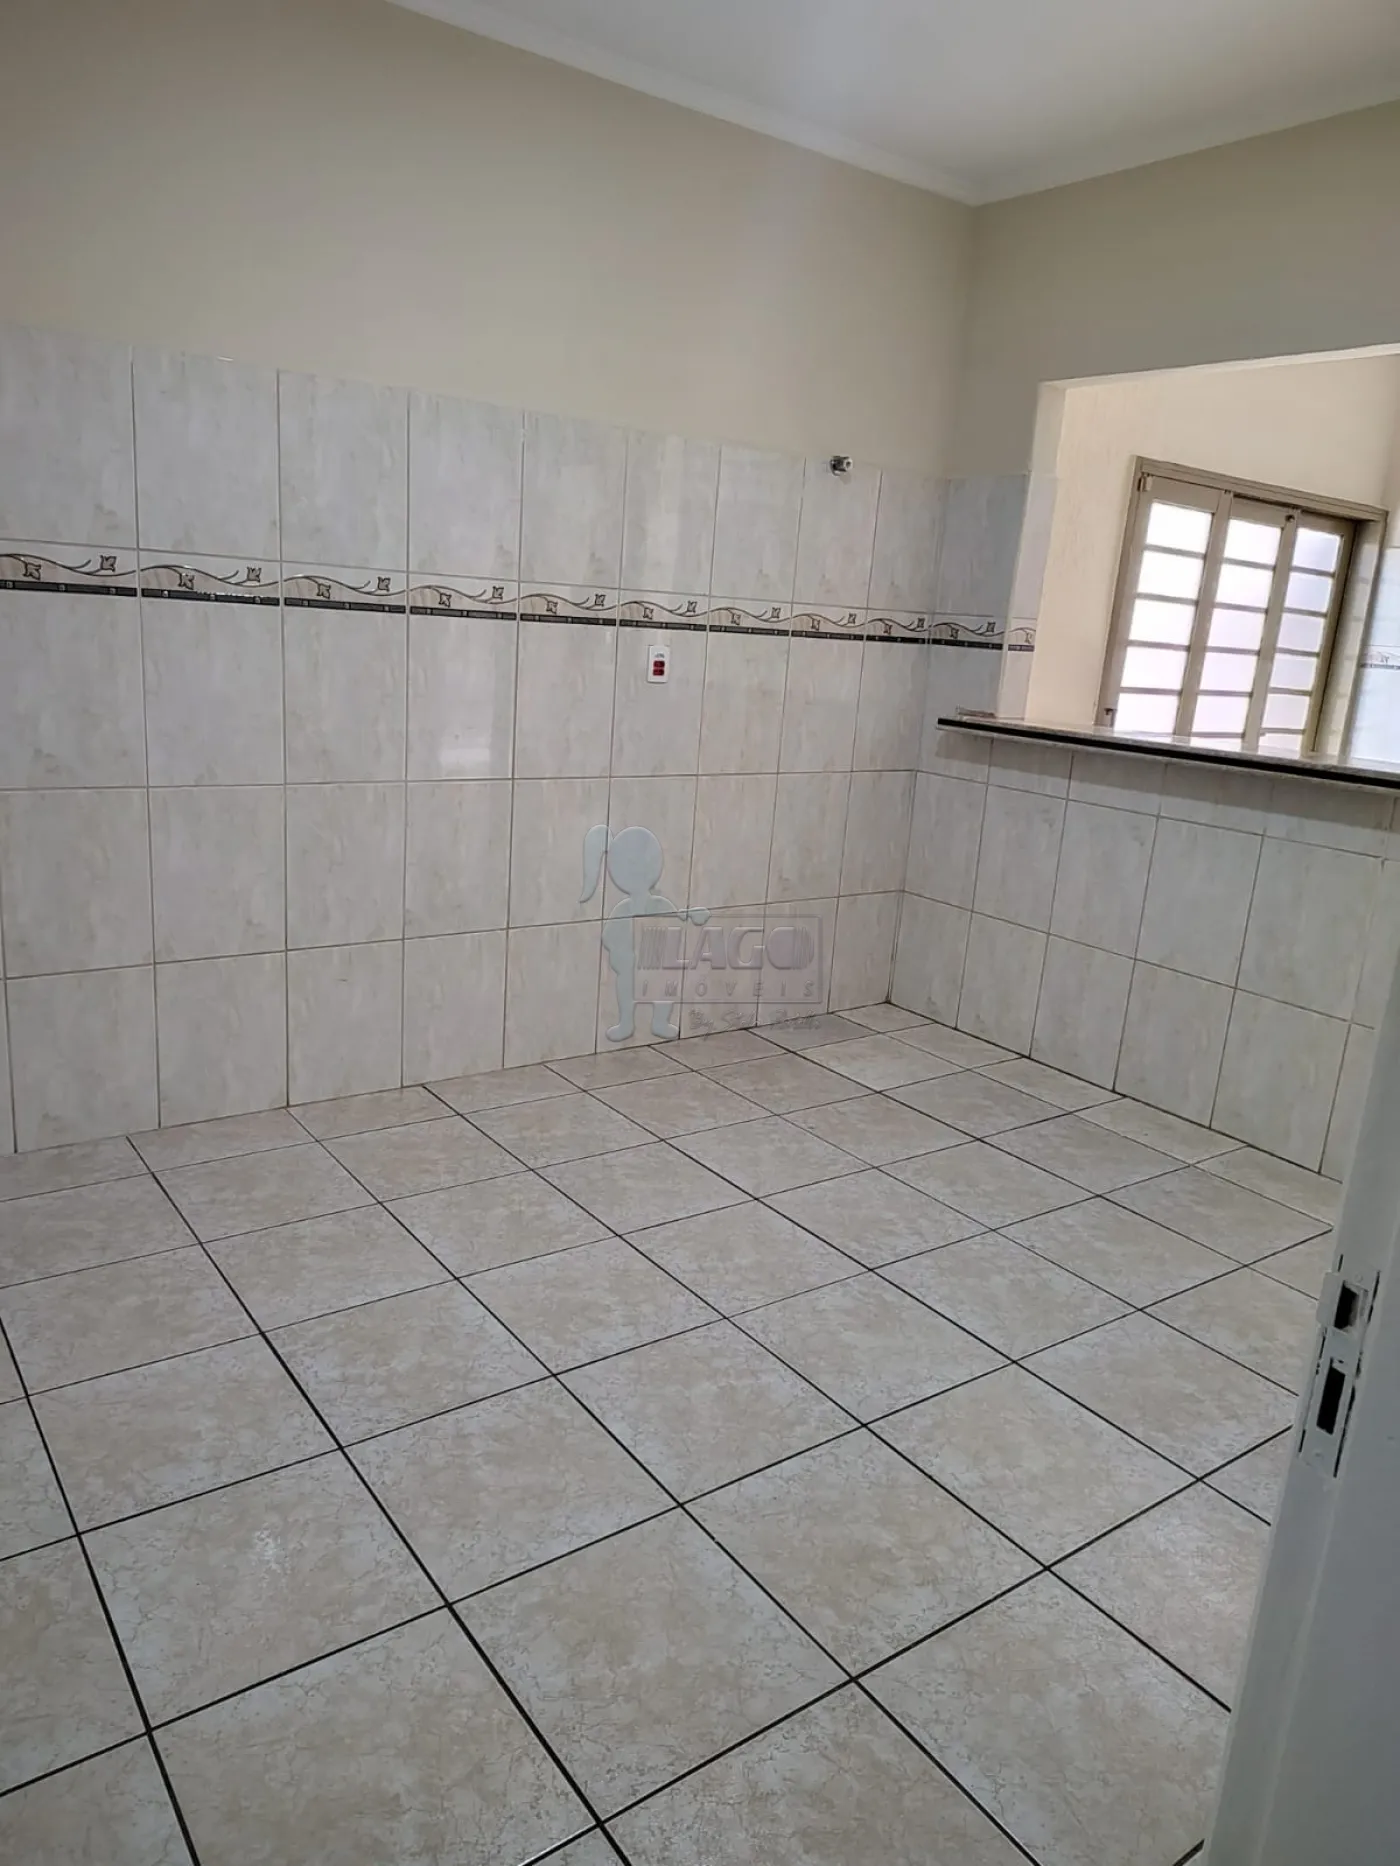 Comprar Casas / Padrão em Ribeirão Preto R$ 255.000,00 - Foto 11